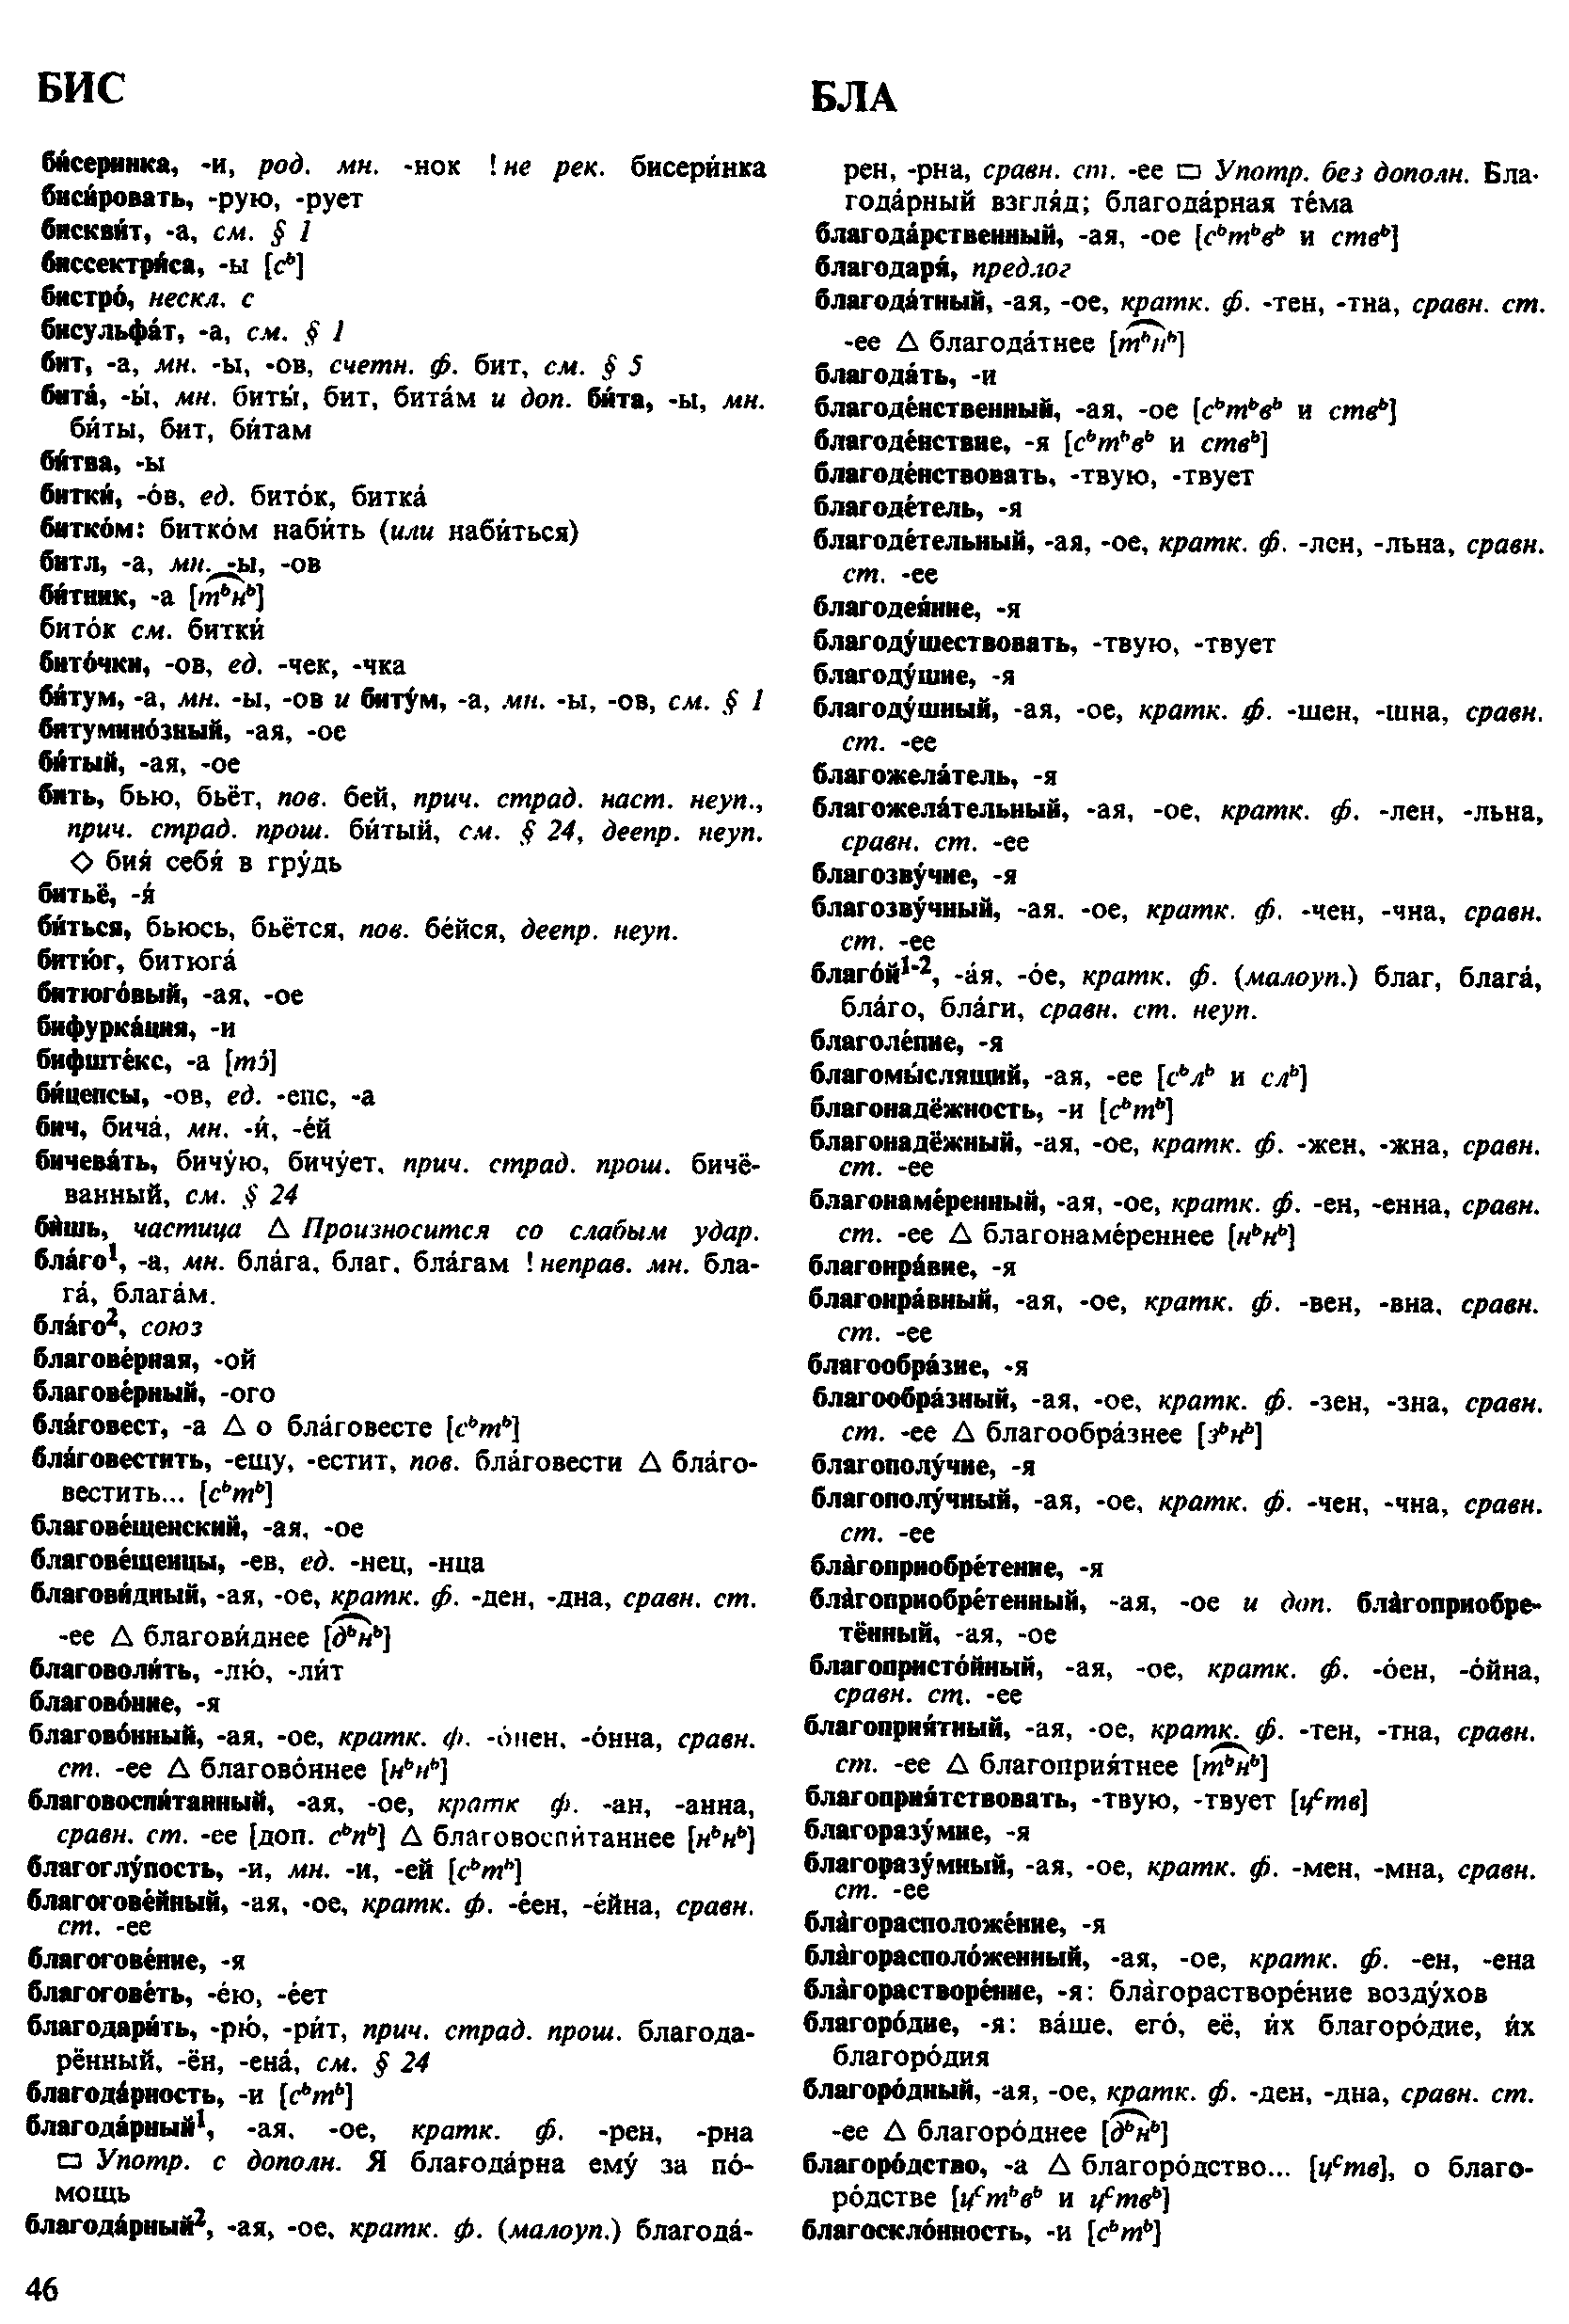 Фотокопия pdf / скан страницы 46 орфоэпического словаря под редакцией Аванесова (4 издание, 1988 год)